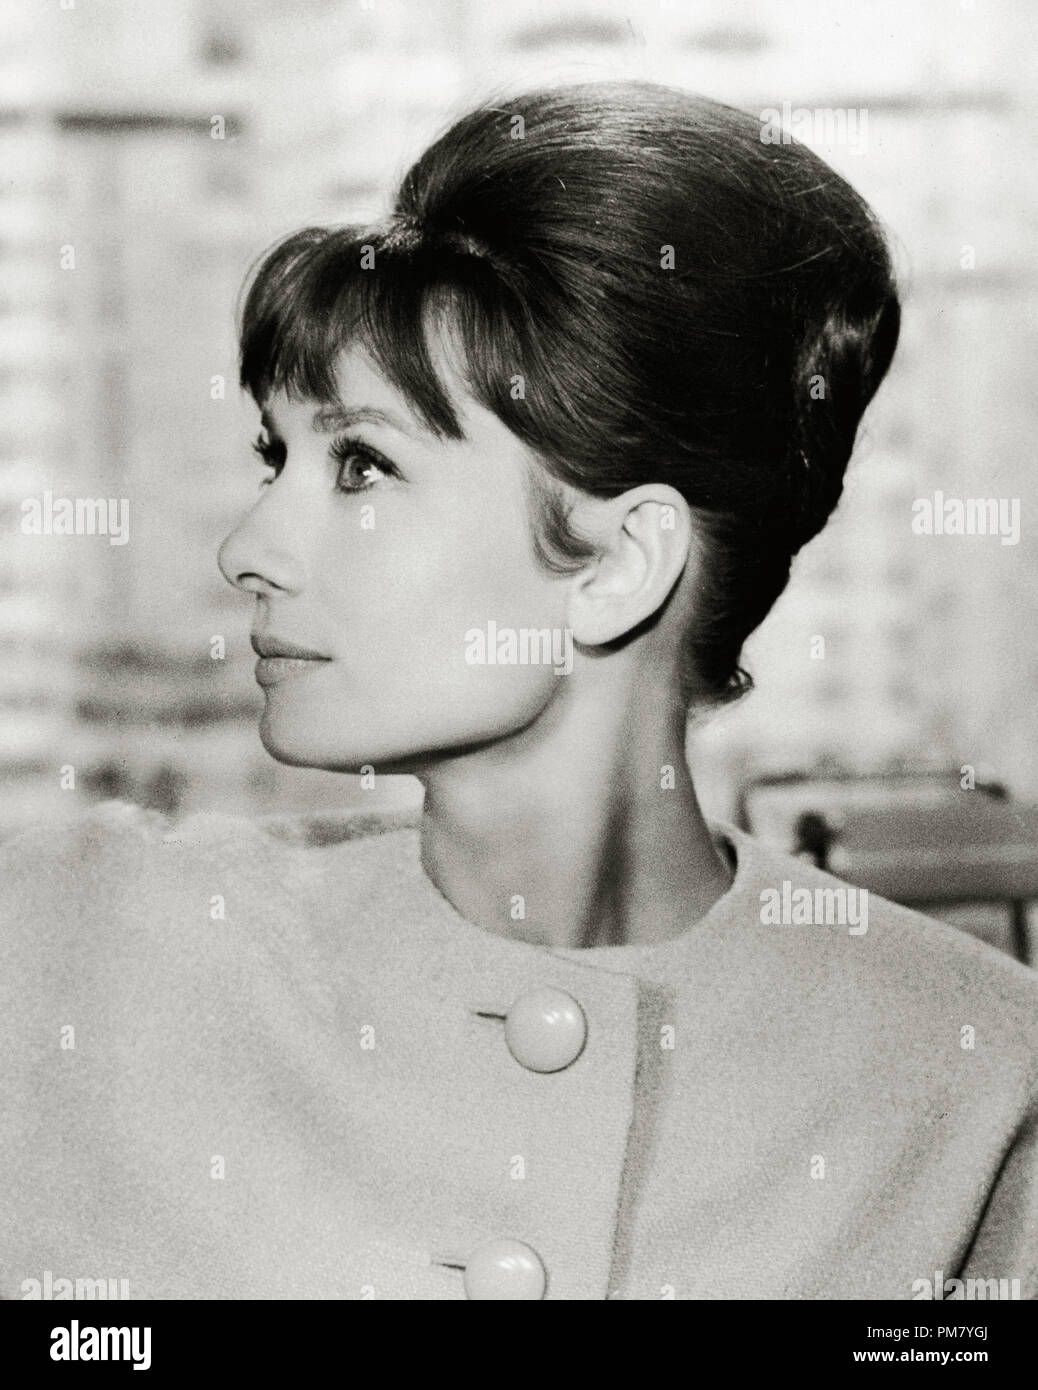 (Archivage classique du cinéma - Audrey Hepburn rétrospective) Audrey Hepburn, vers 1961 référence #  31569 009THA Banque D'Images